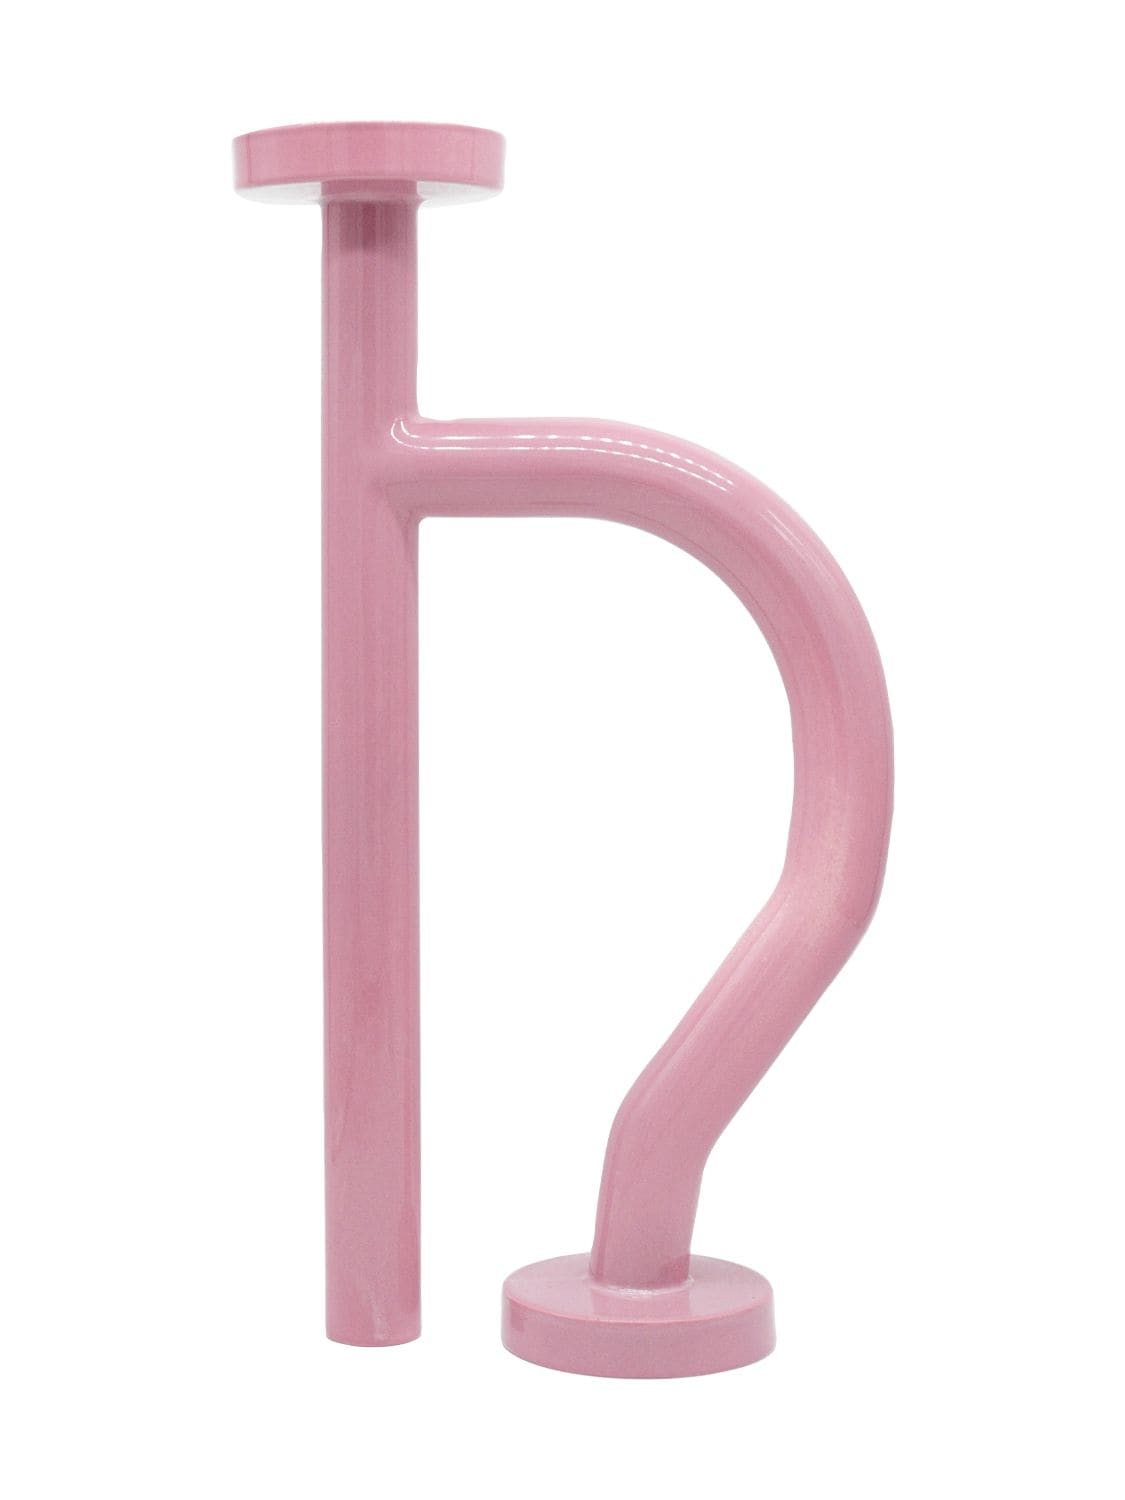 Image of Curvy Handle Tubular Vase